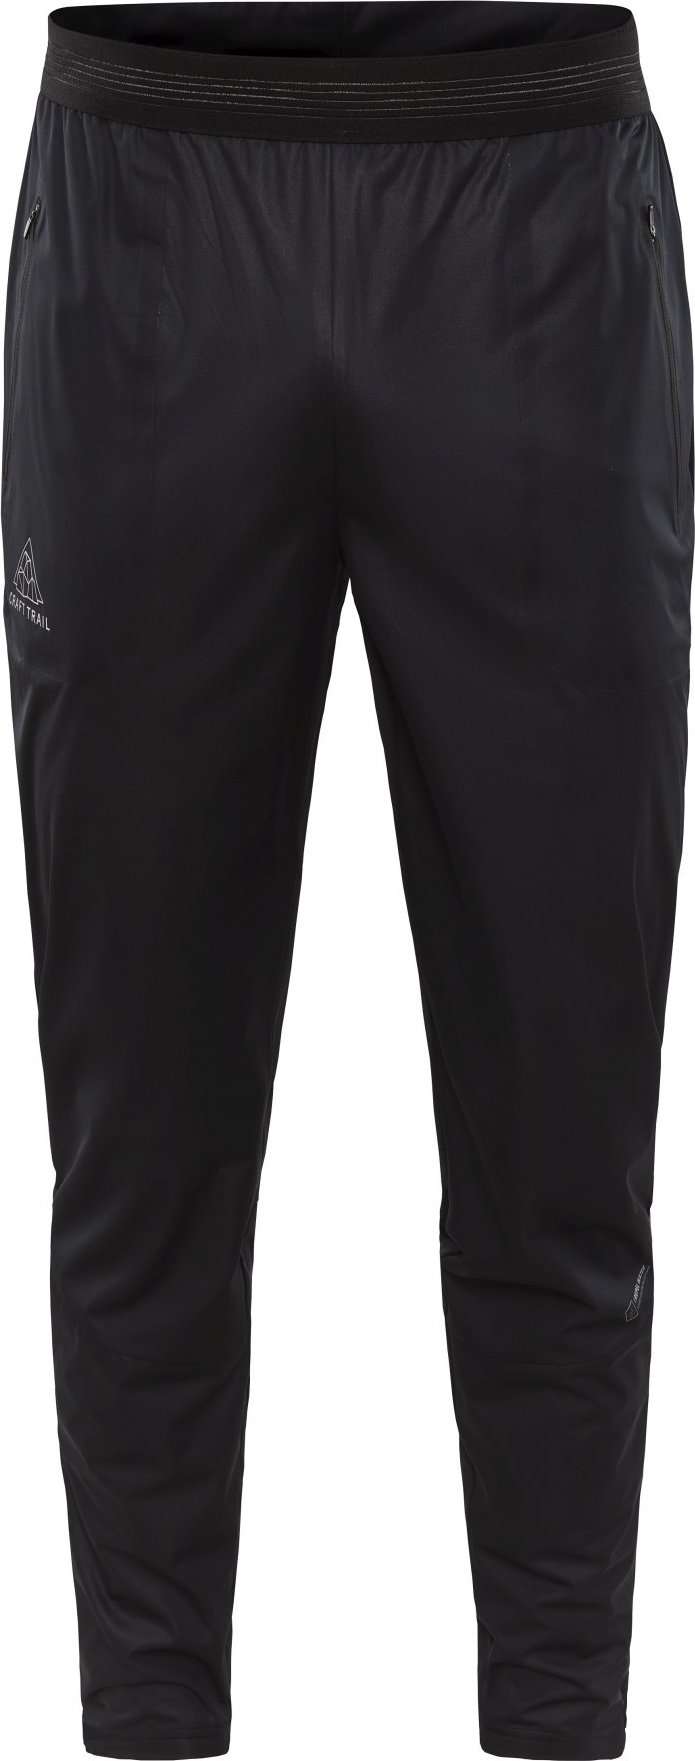 Pánské běžecké kalhoty CRAFT Pro Hydro černé Velikost: S